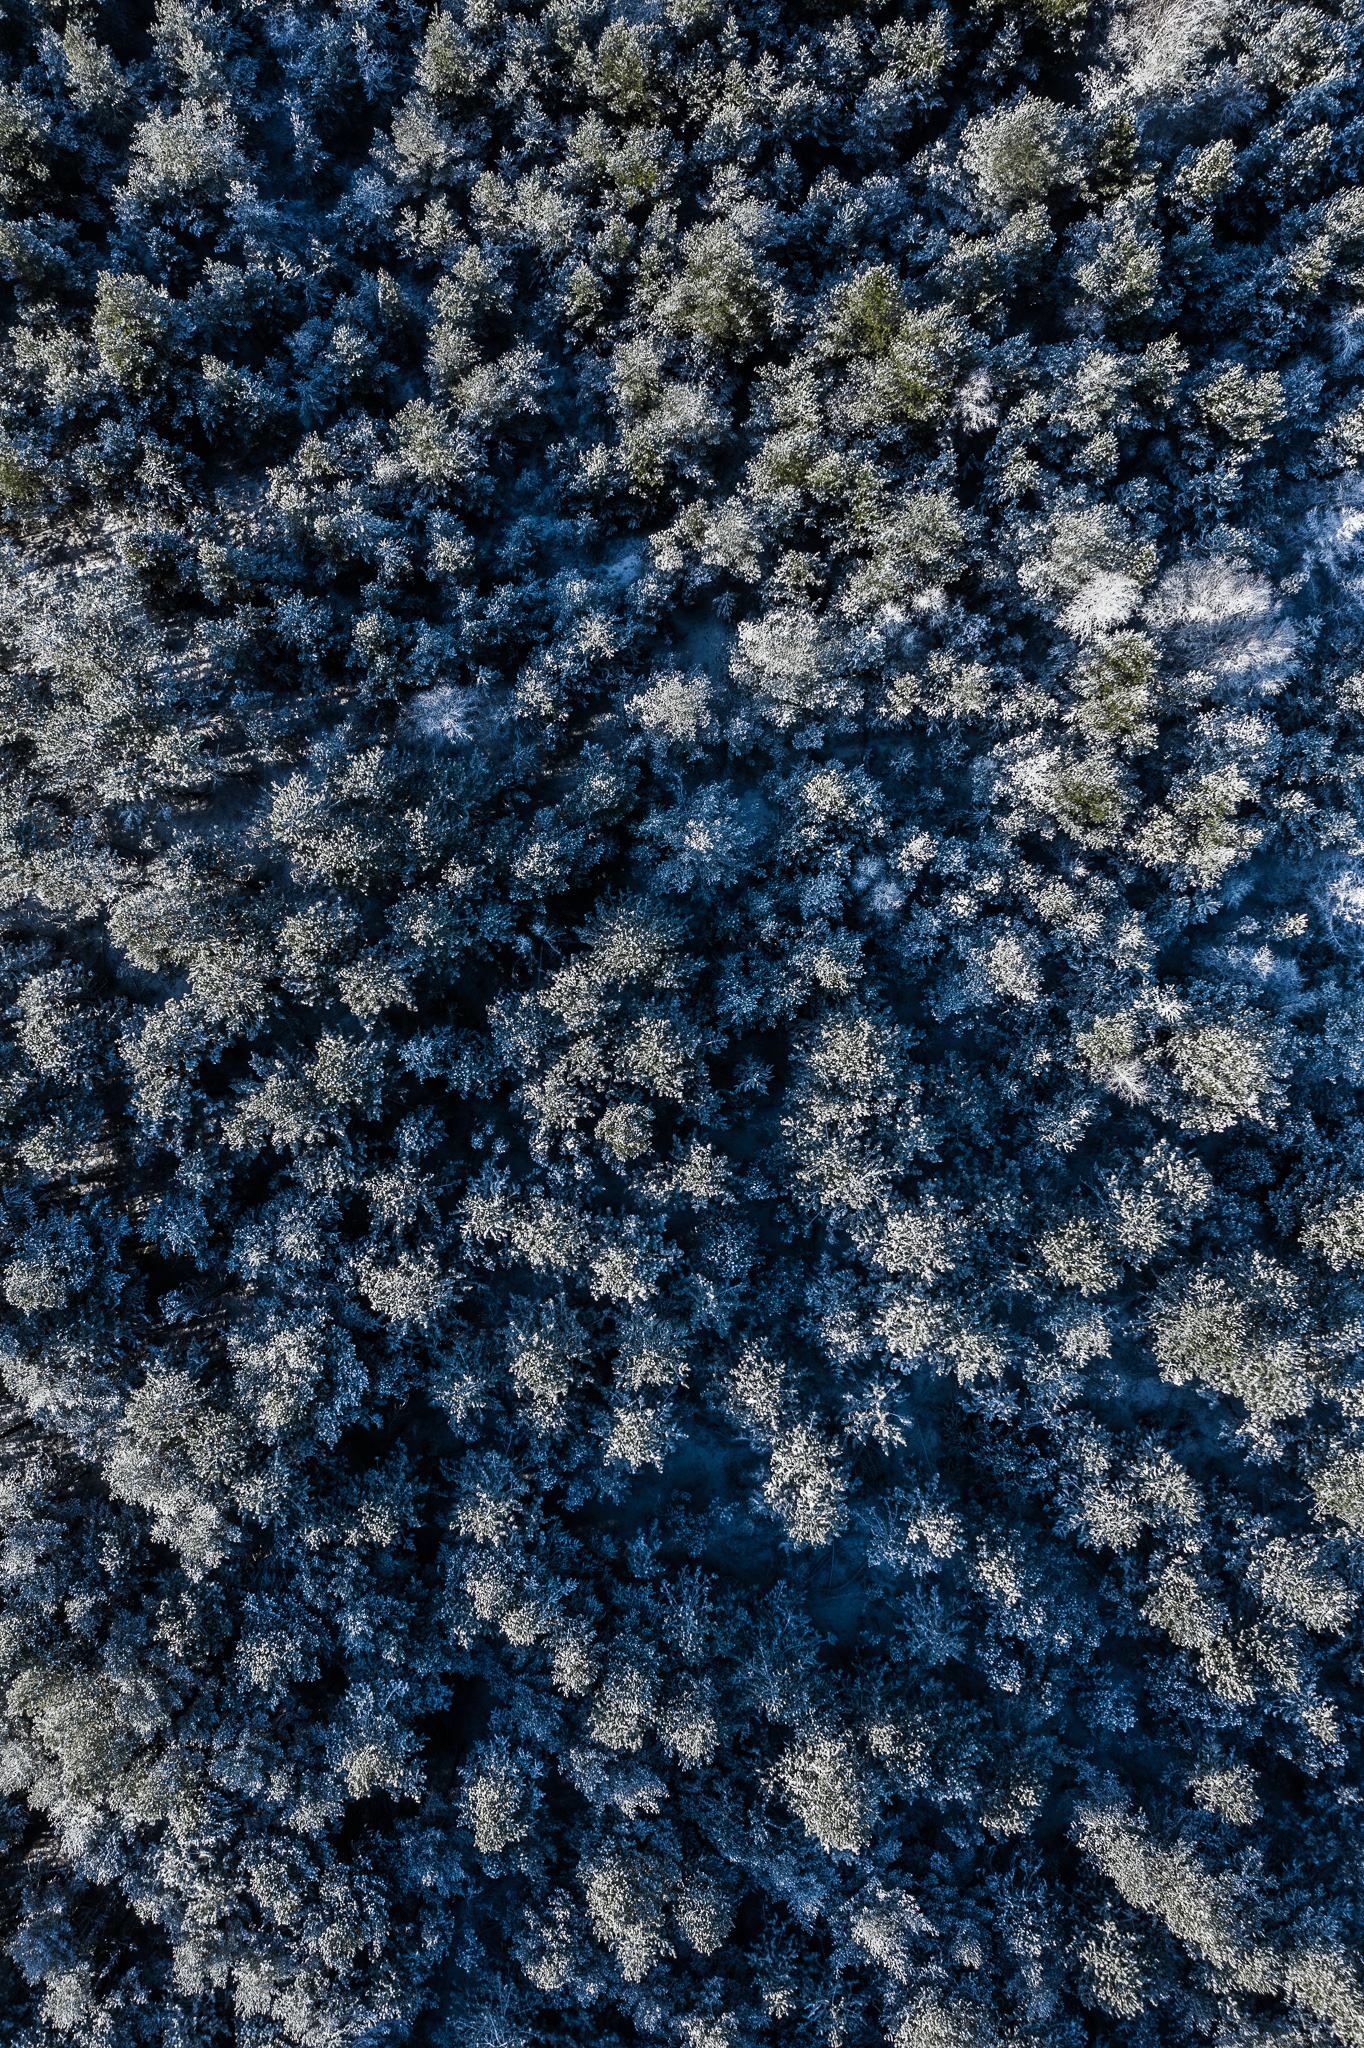 Vinter billeder fra luften af Danmark ved Herning